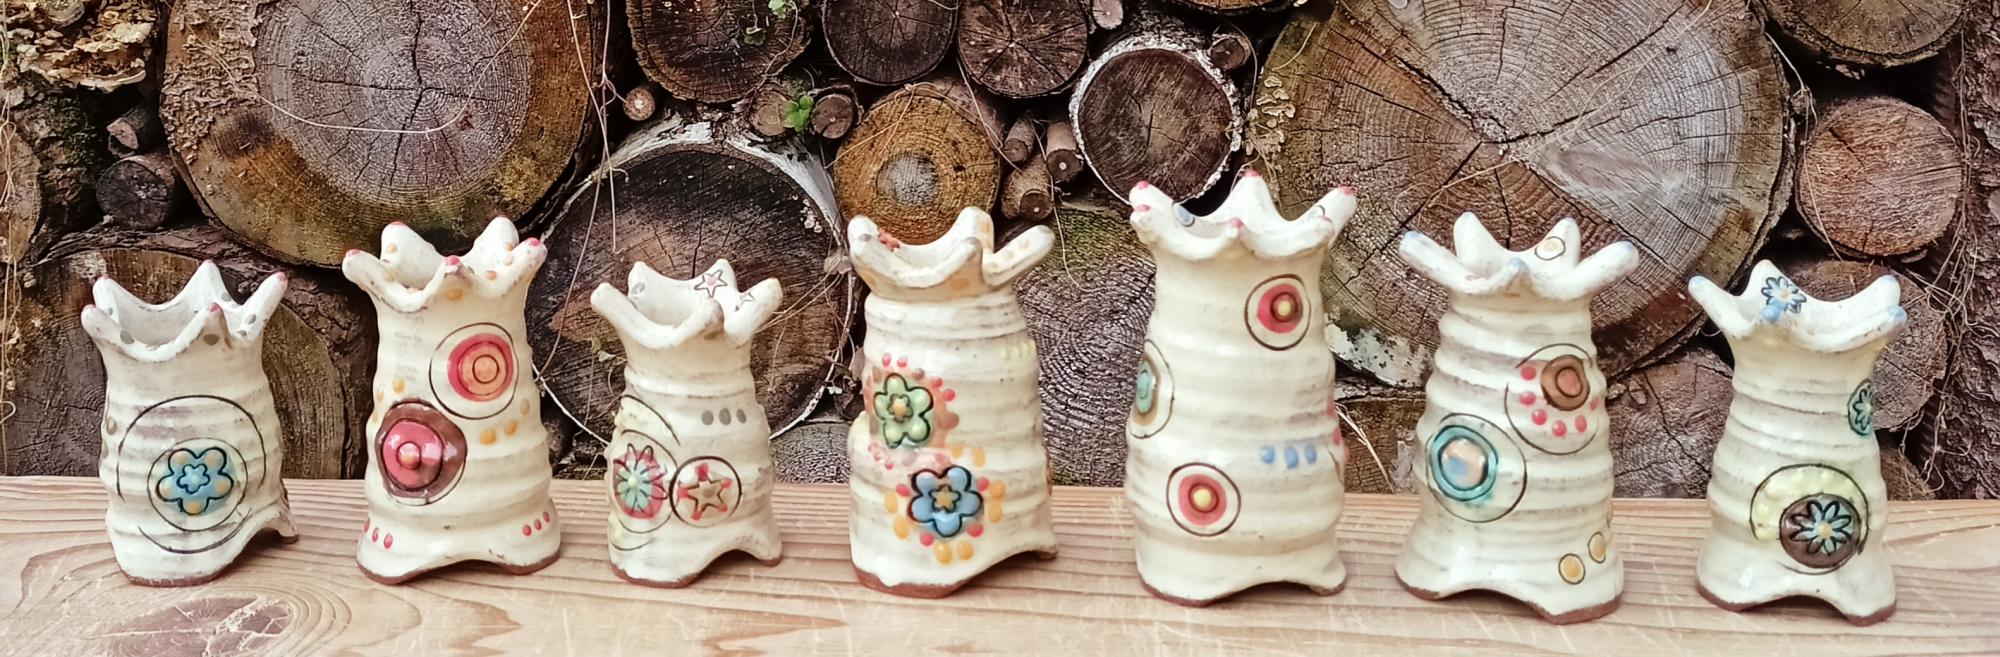 Andrea Wulff Keramik mit Engoben